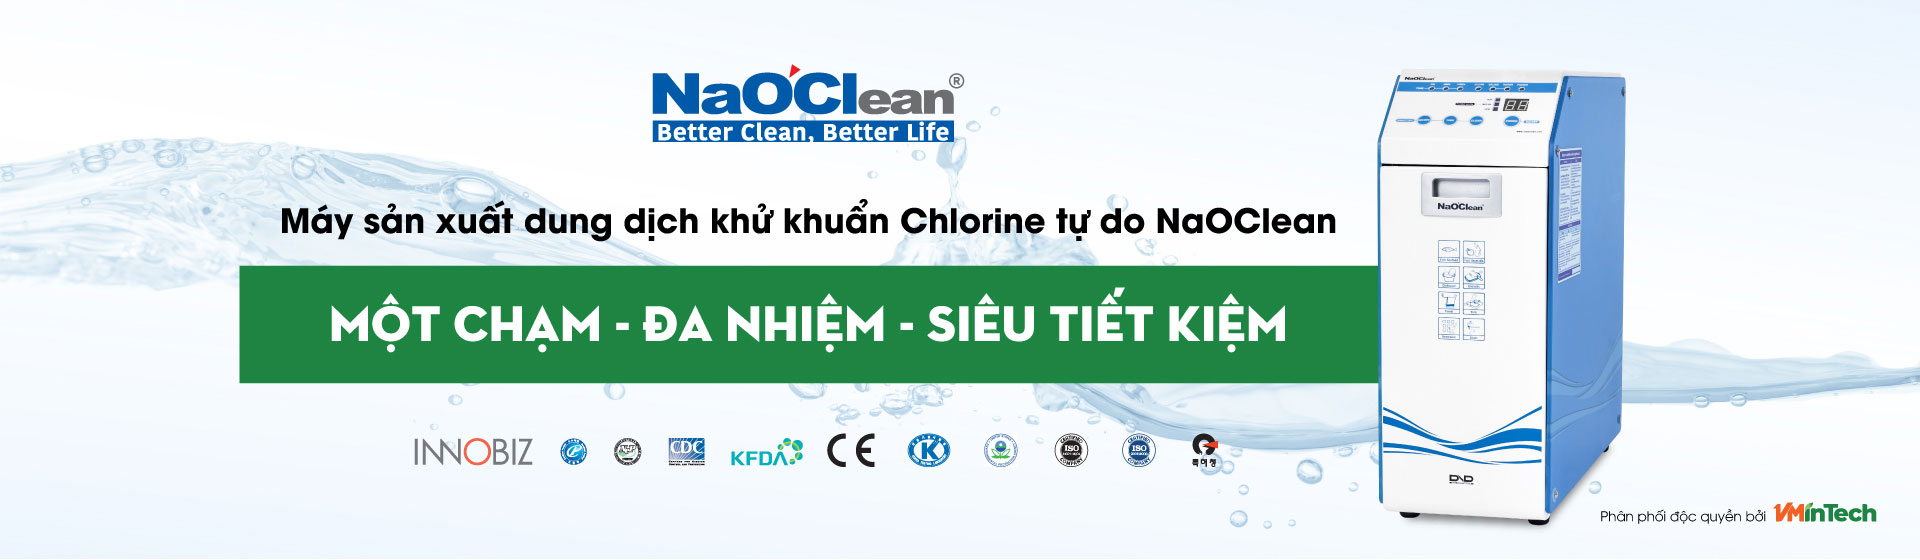 Máy sản xuất dung dịch khử khuẩn Chlorine tự do NaOClean